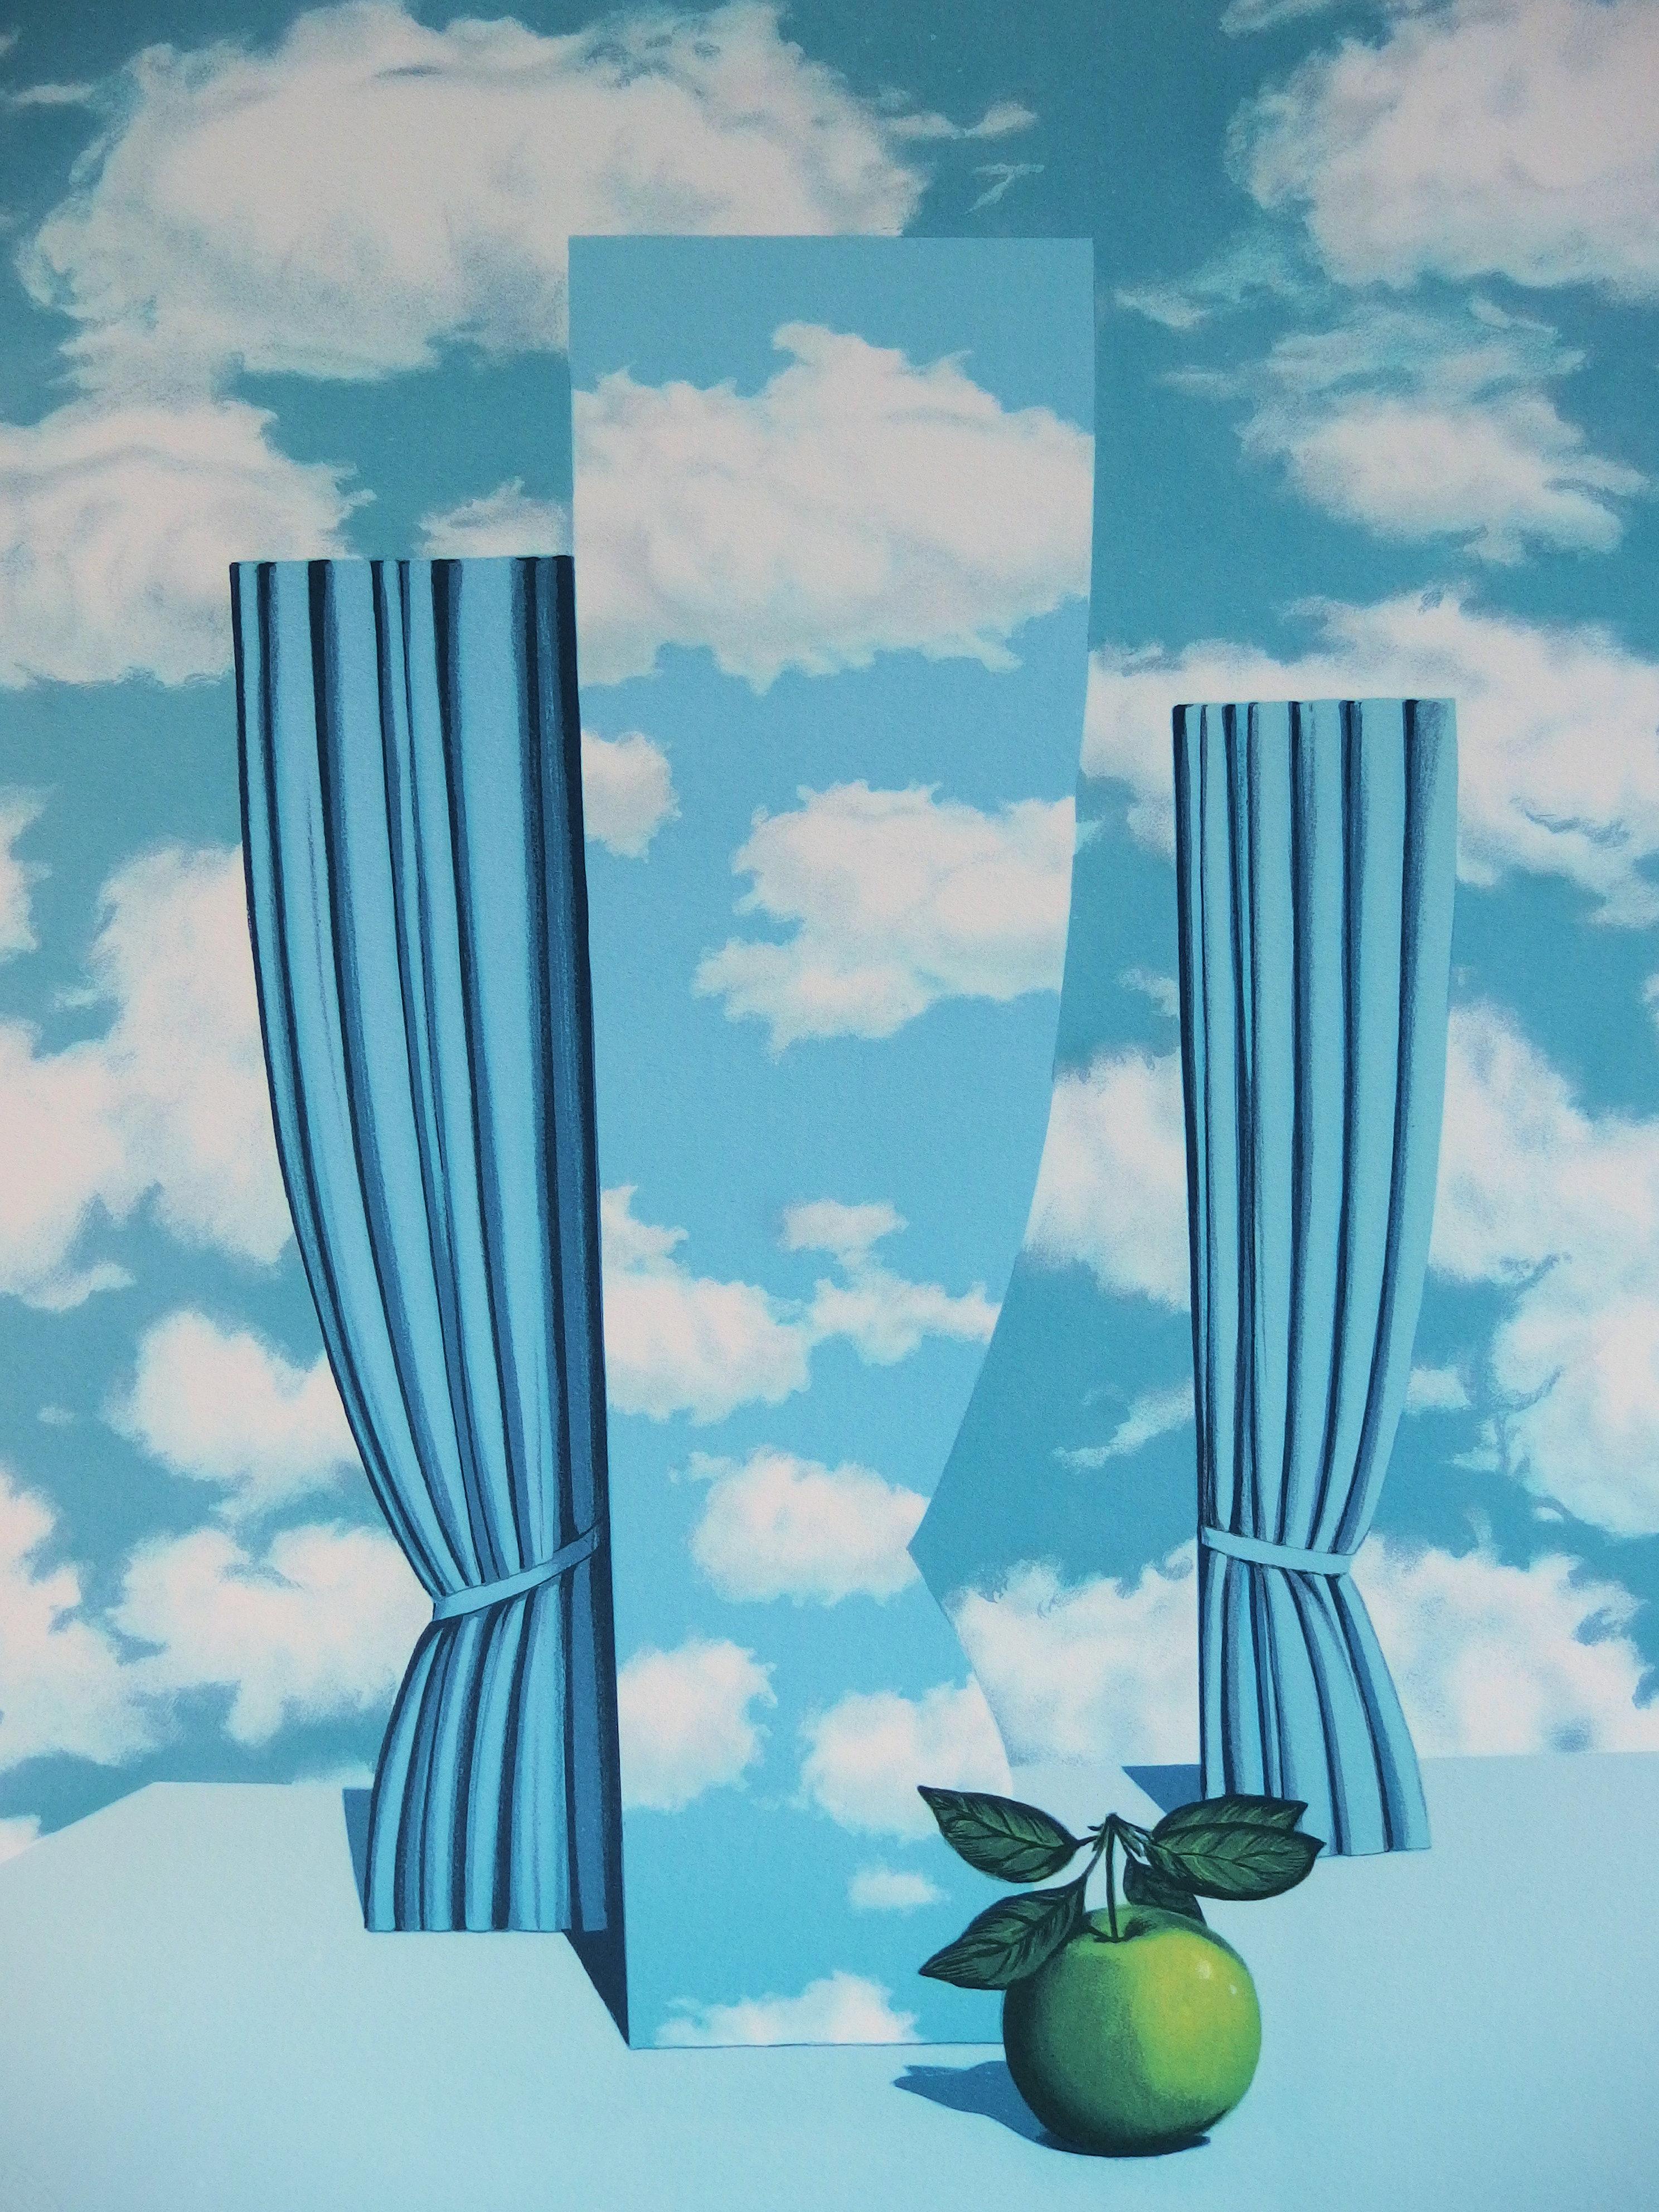 Le Beau Monde - Lithograph - Surrealist Print by (after) René Magritte